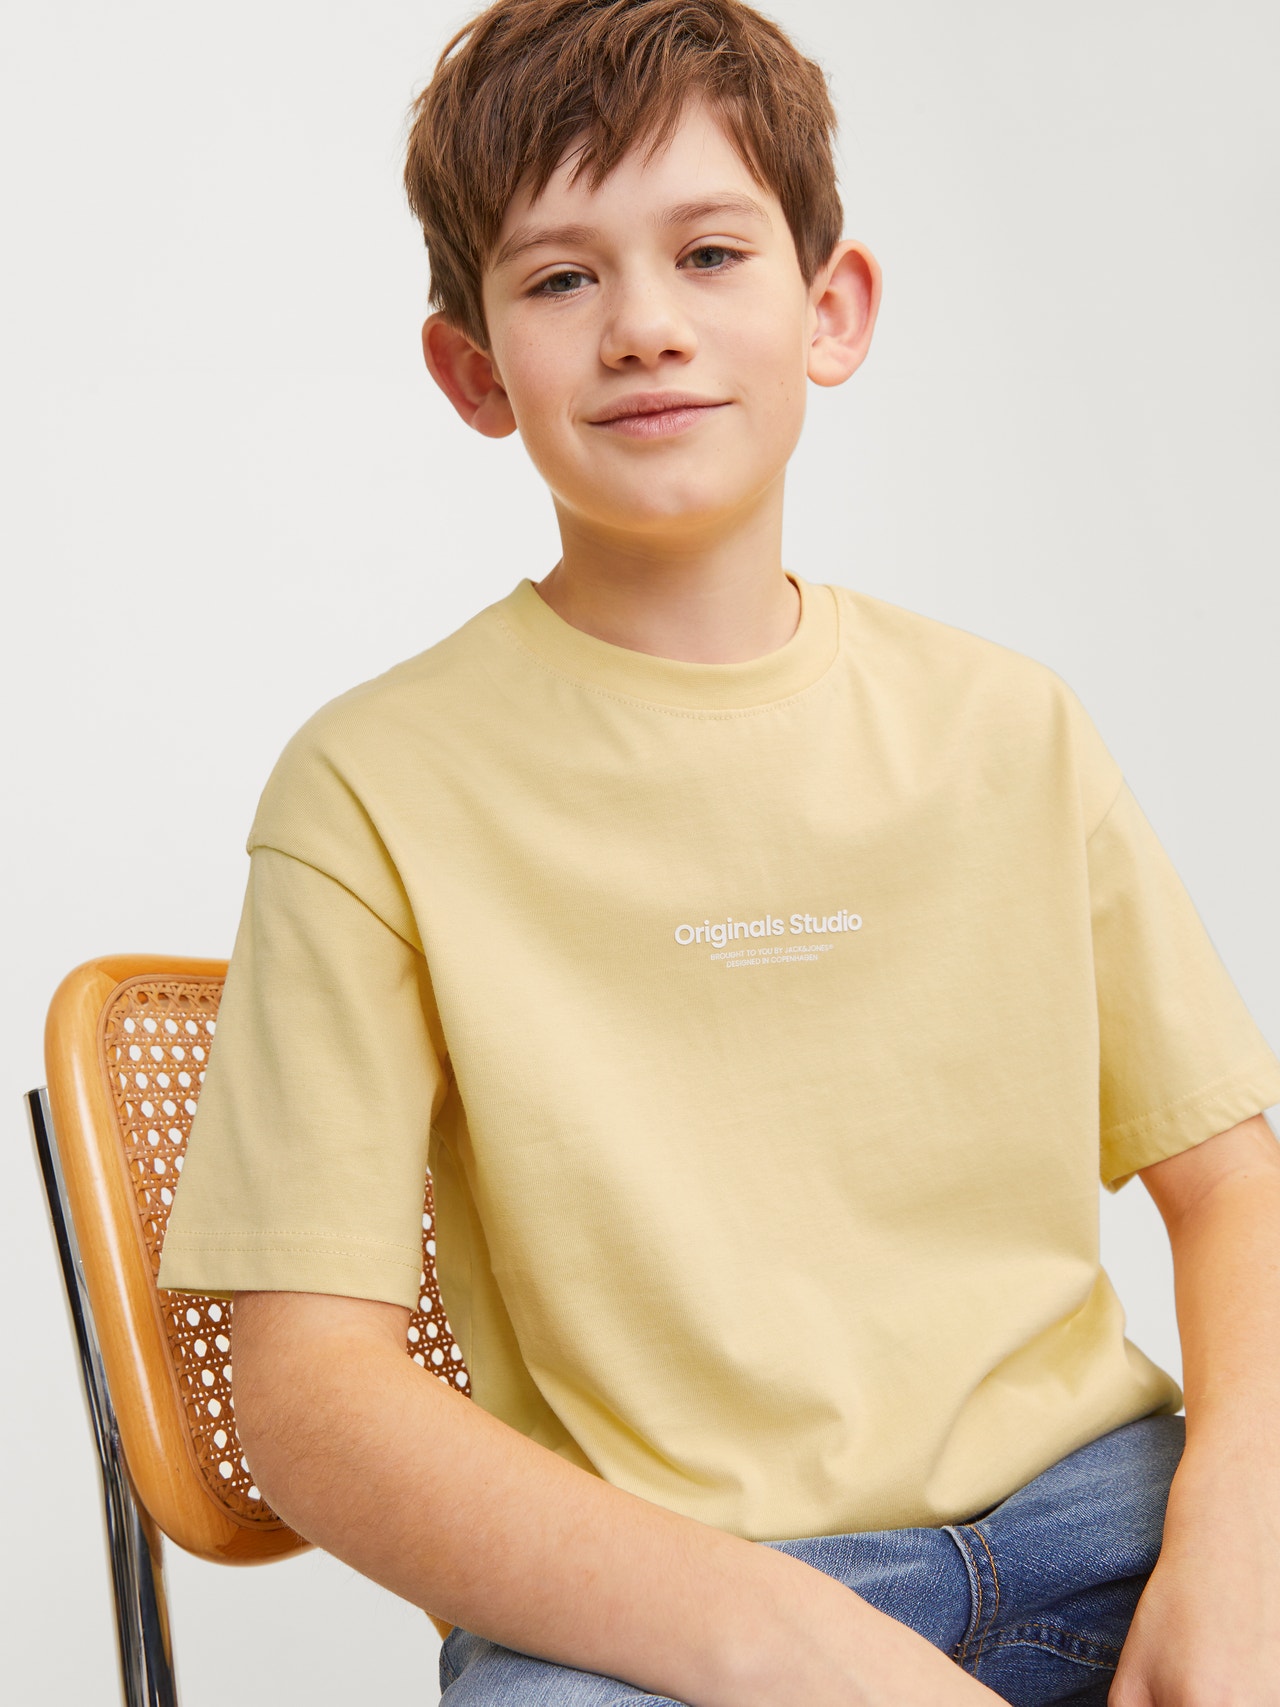 Jack & Jones Nadruk T-shirt Dla chłopców -Italian Straw - 12242827